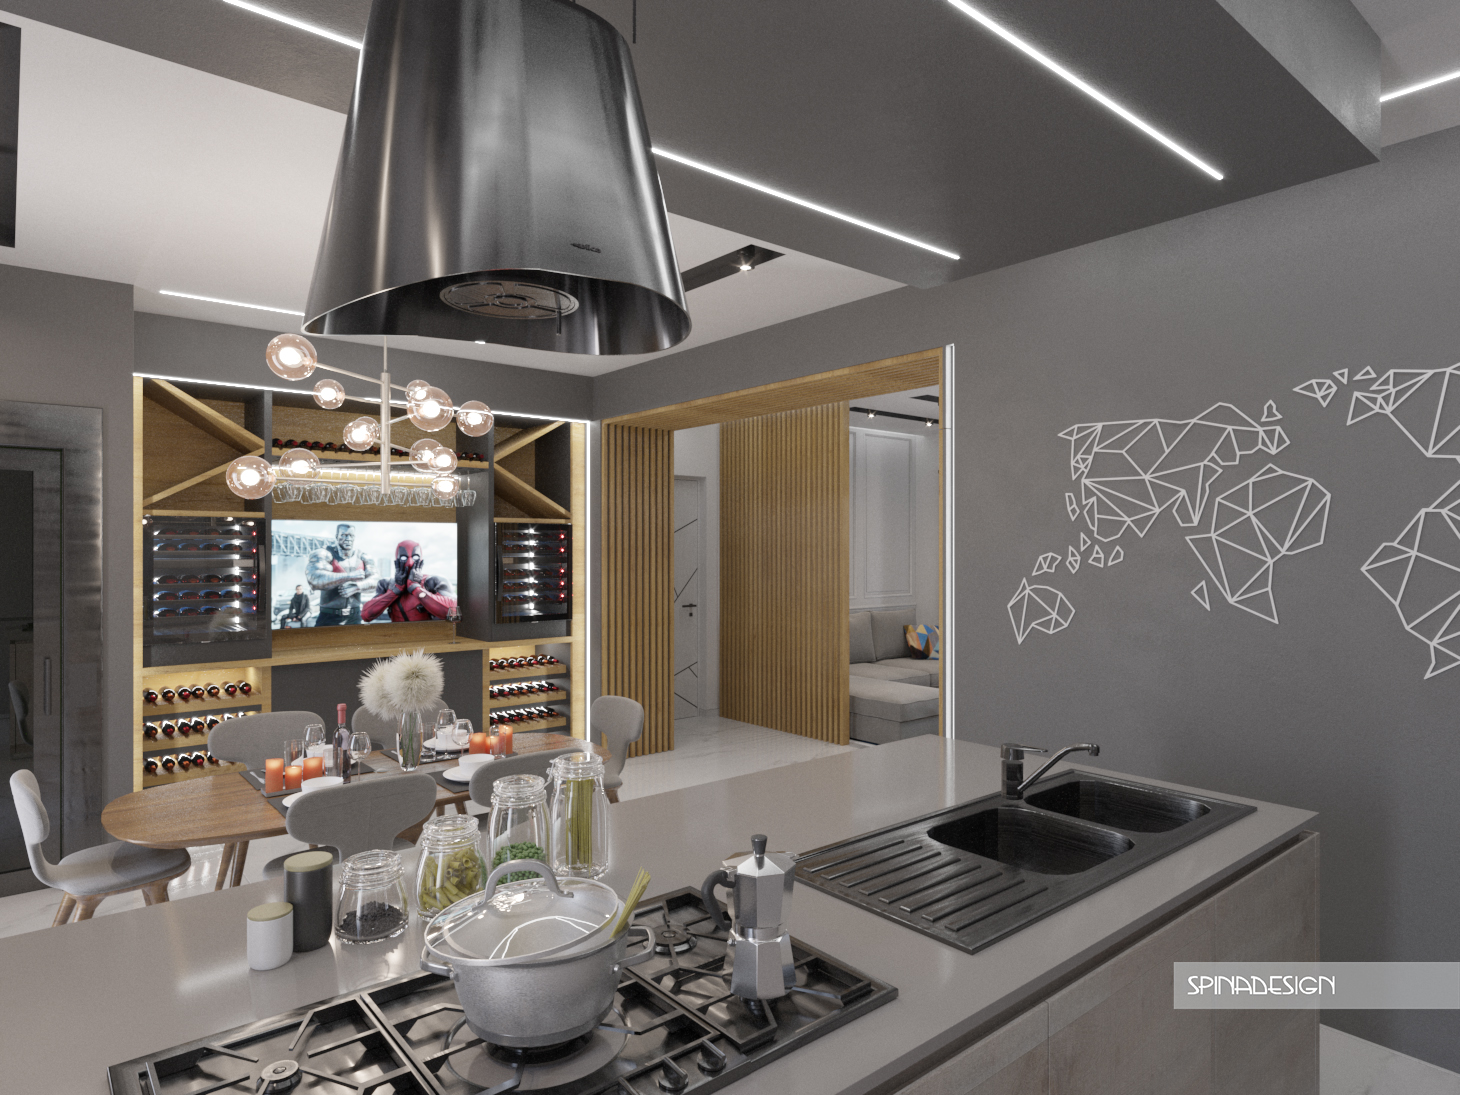 Progettazione e design di interni cucina soggiorno